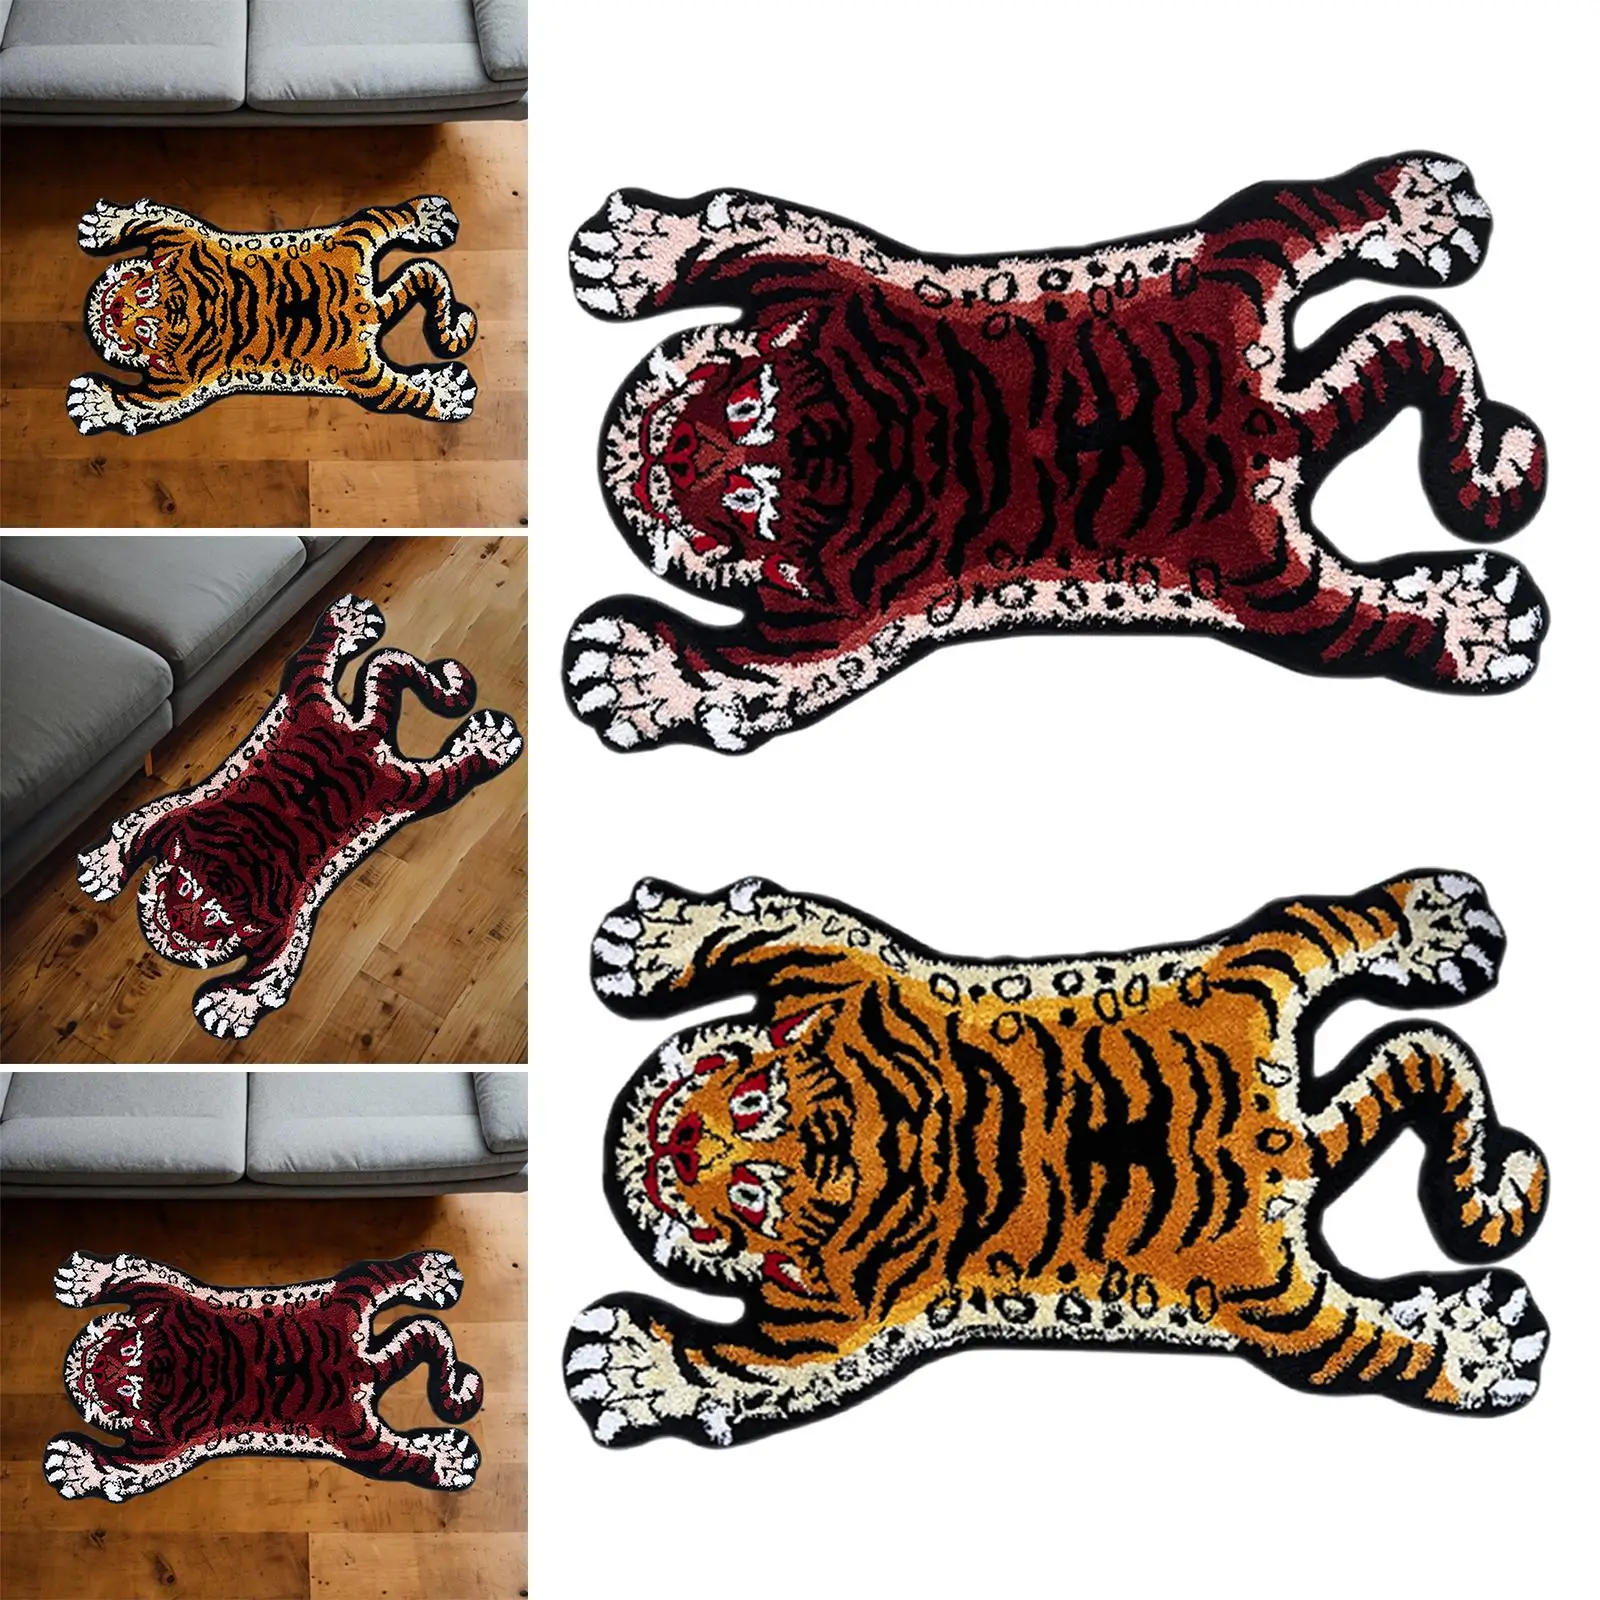 Tiger Carpet Absorbent Non-Slip Animal Shape Carpet for Kids Room